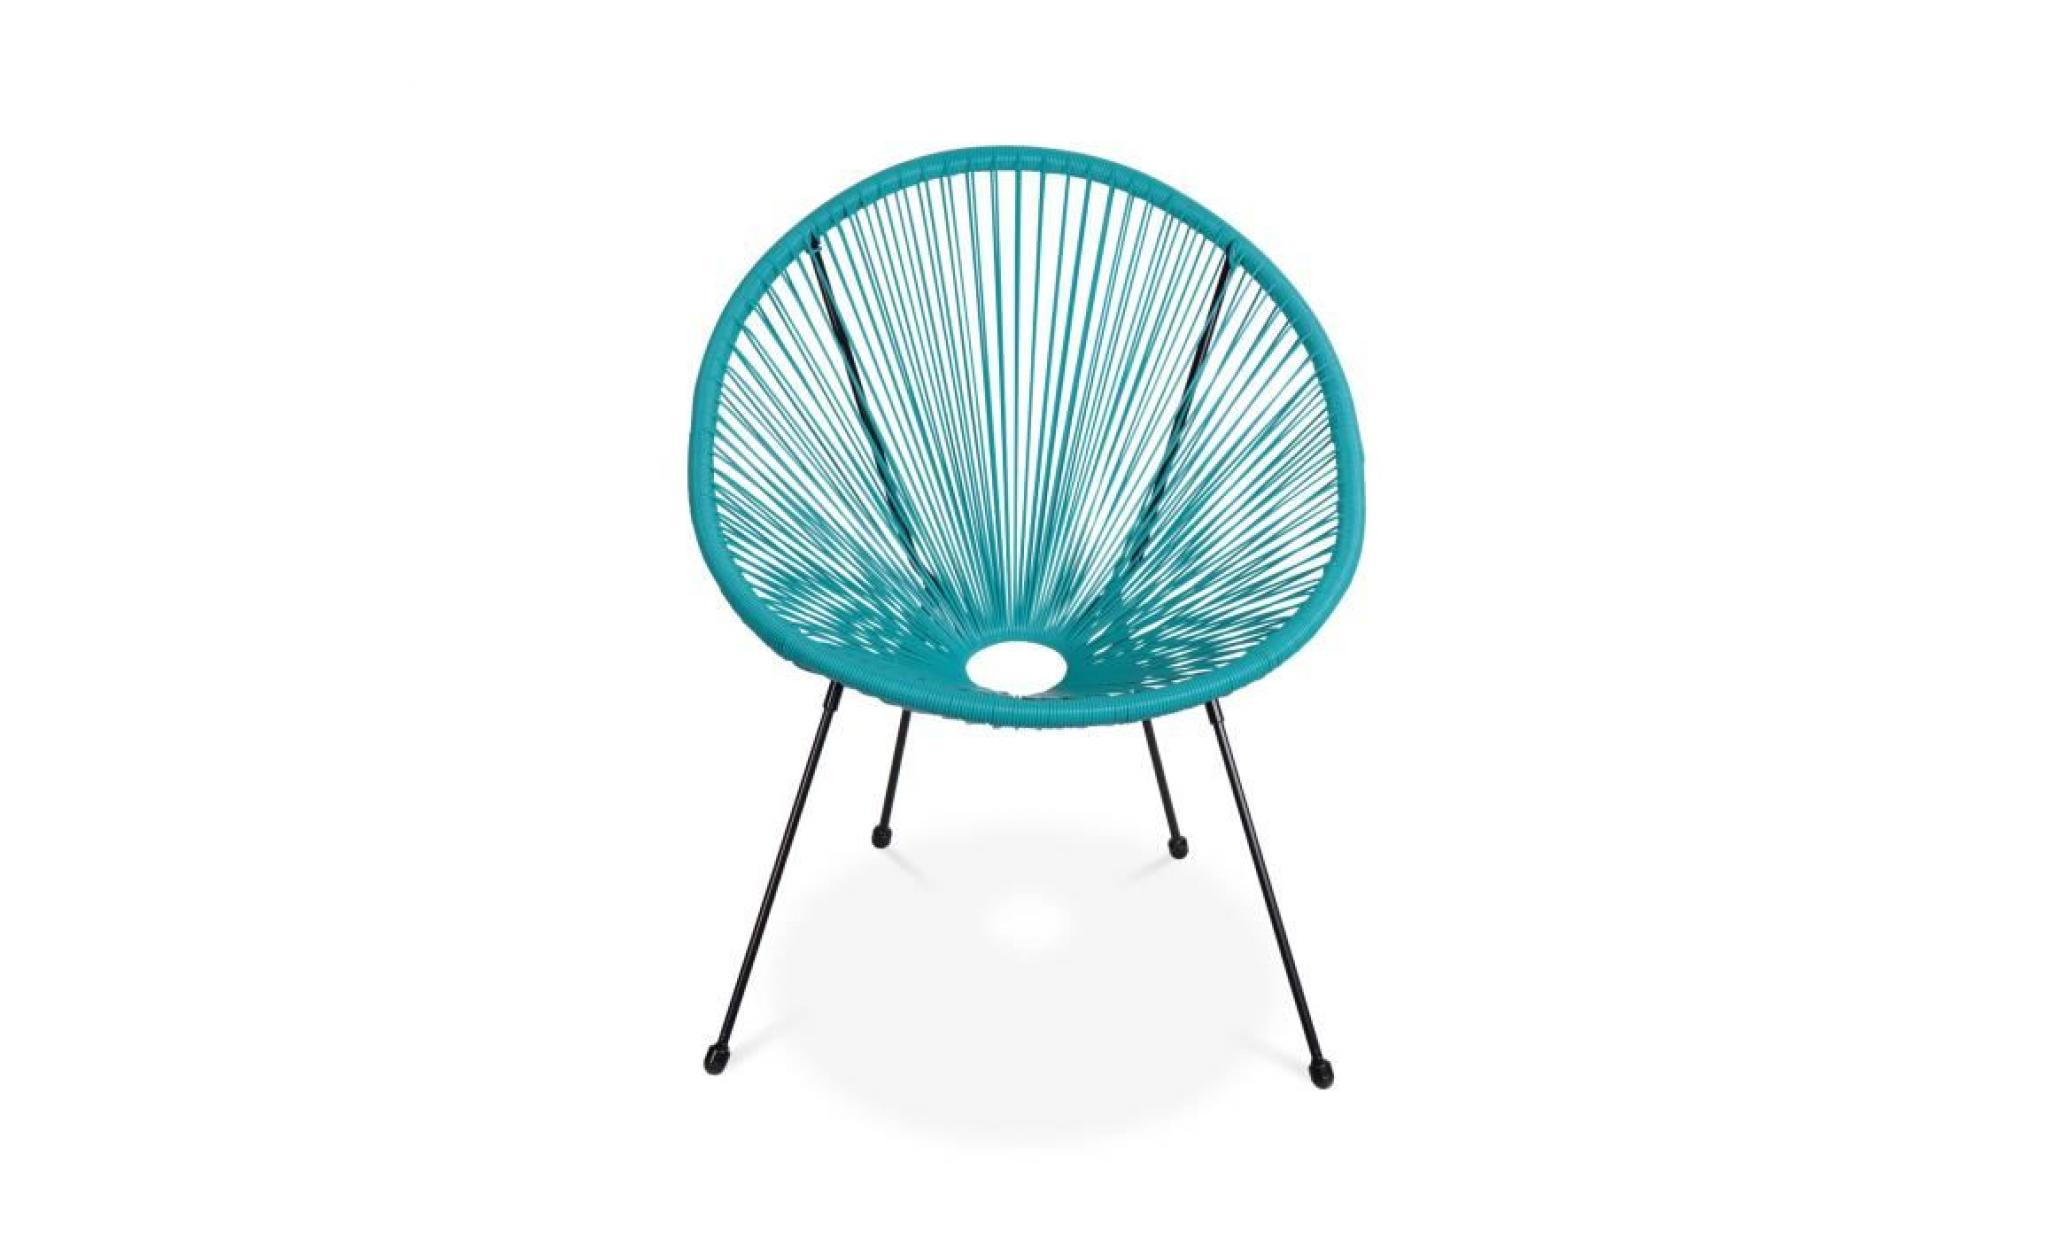 fauteuil acapulco forme d'oeuf   turquoise   fauteuil 4 pieds design rétro, cordage plastique, intérieur / extérieur pas cher